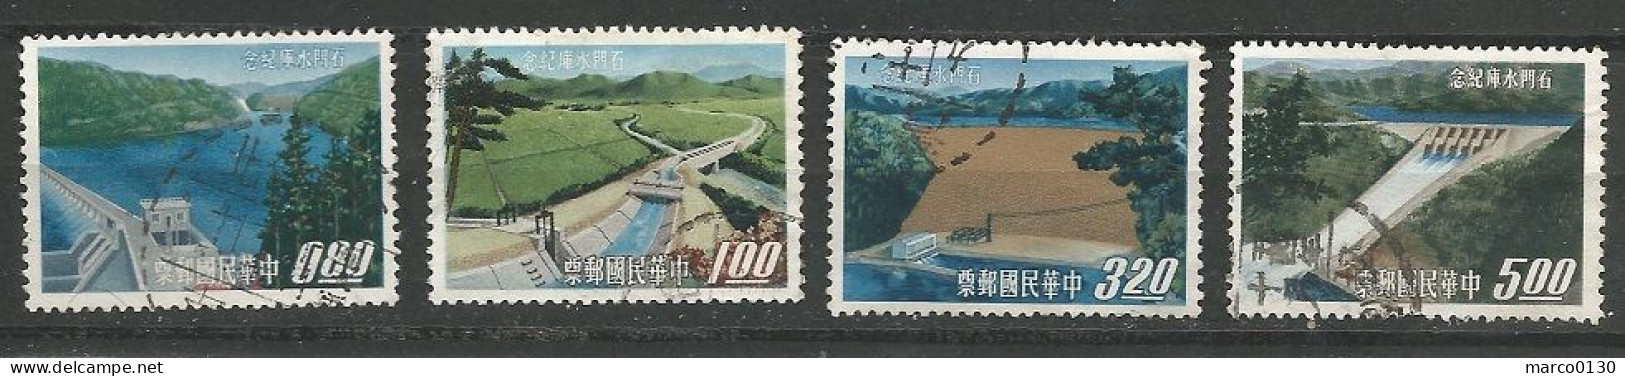 FORMOSE (TAIWAN) N° 472 + N° 473  + N° 474 + N° 475 OBLITERE - Used Stamps